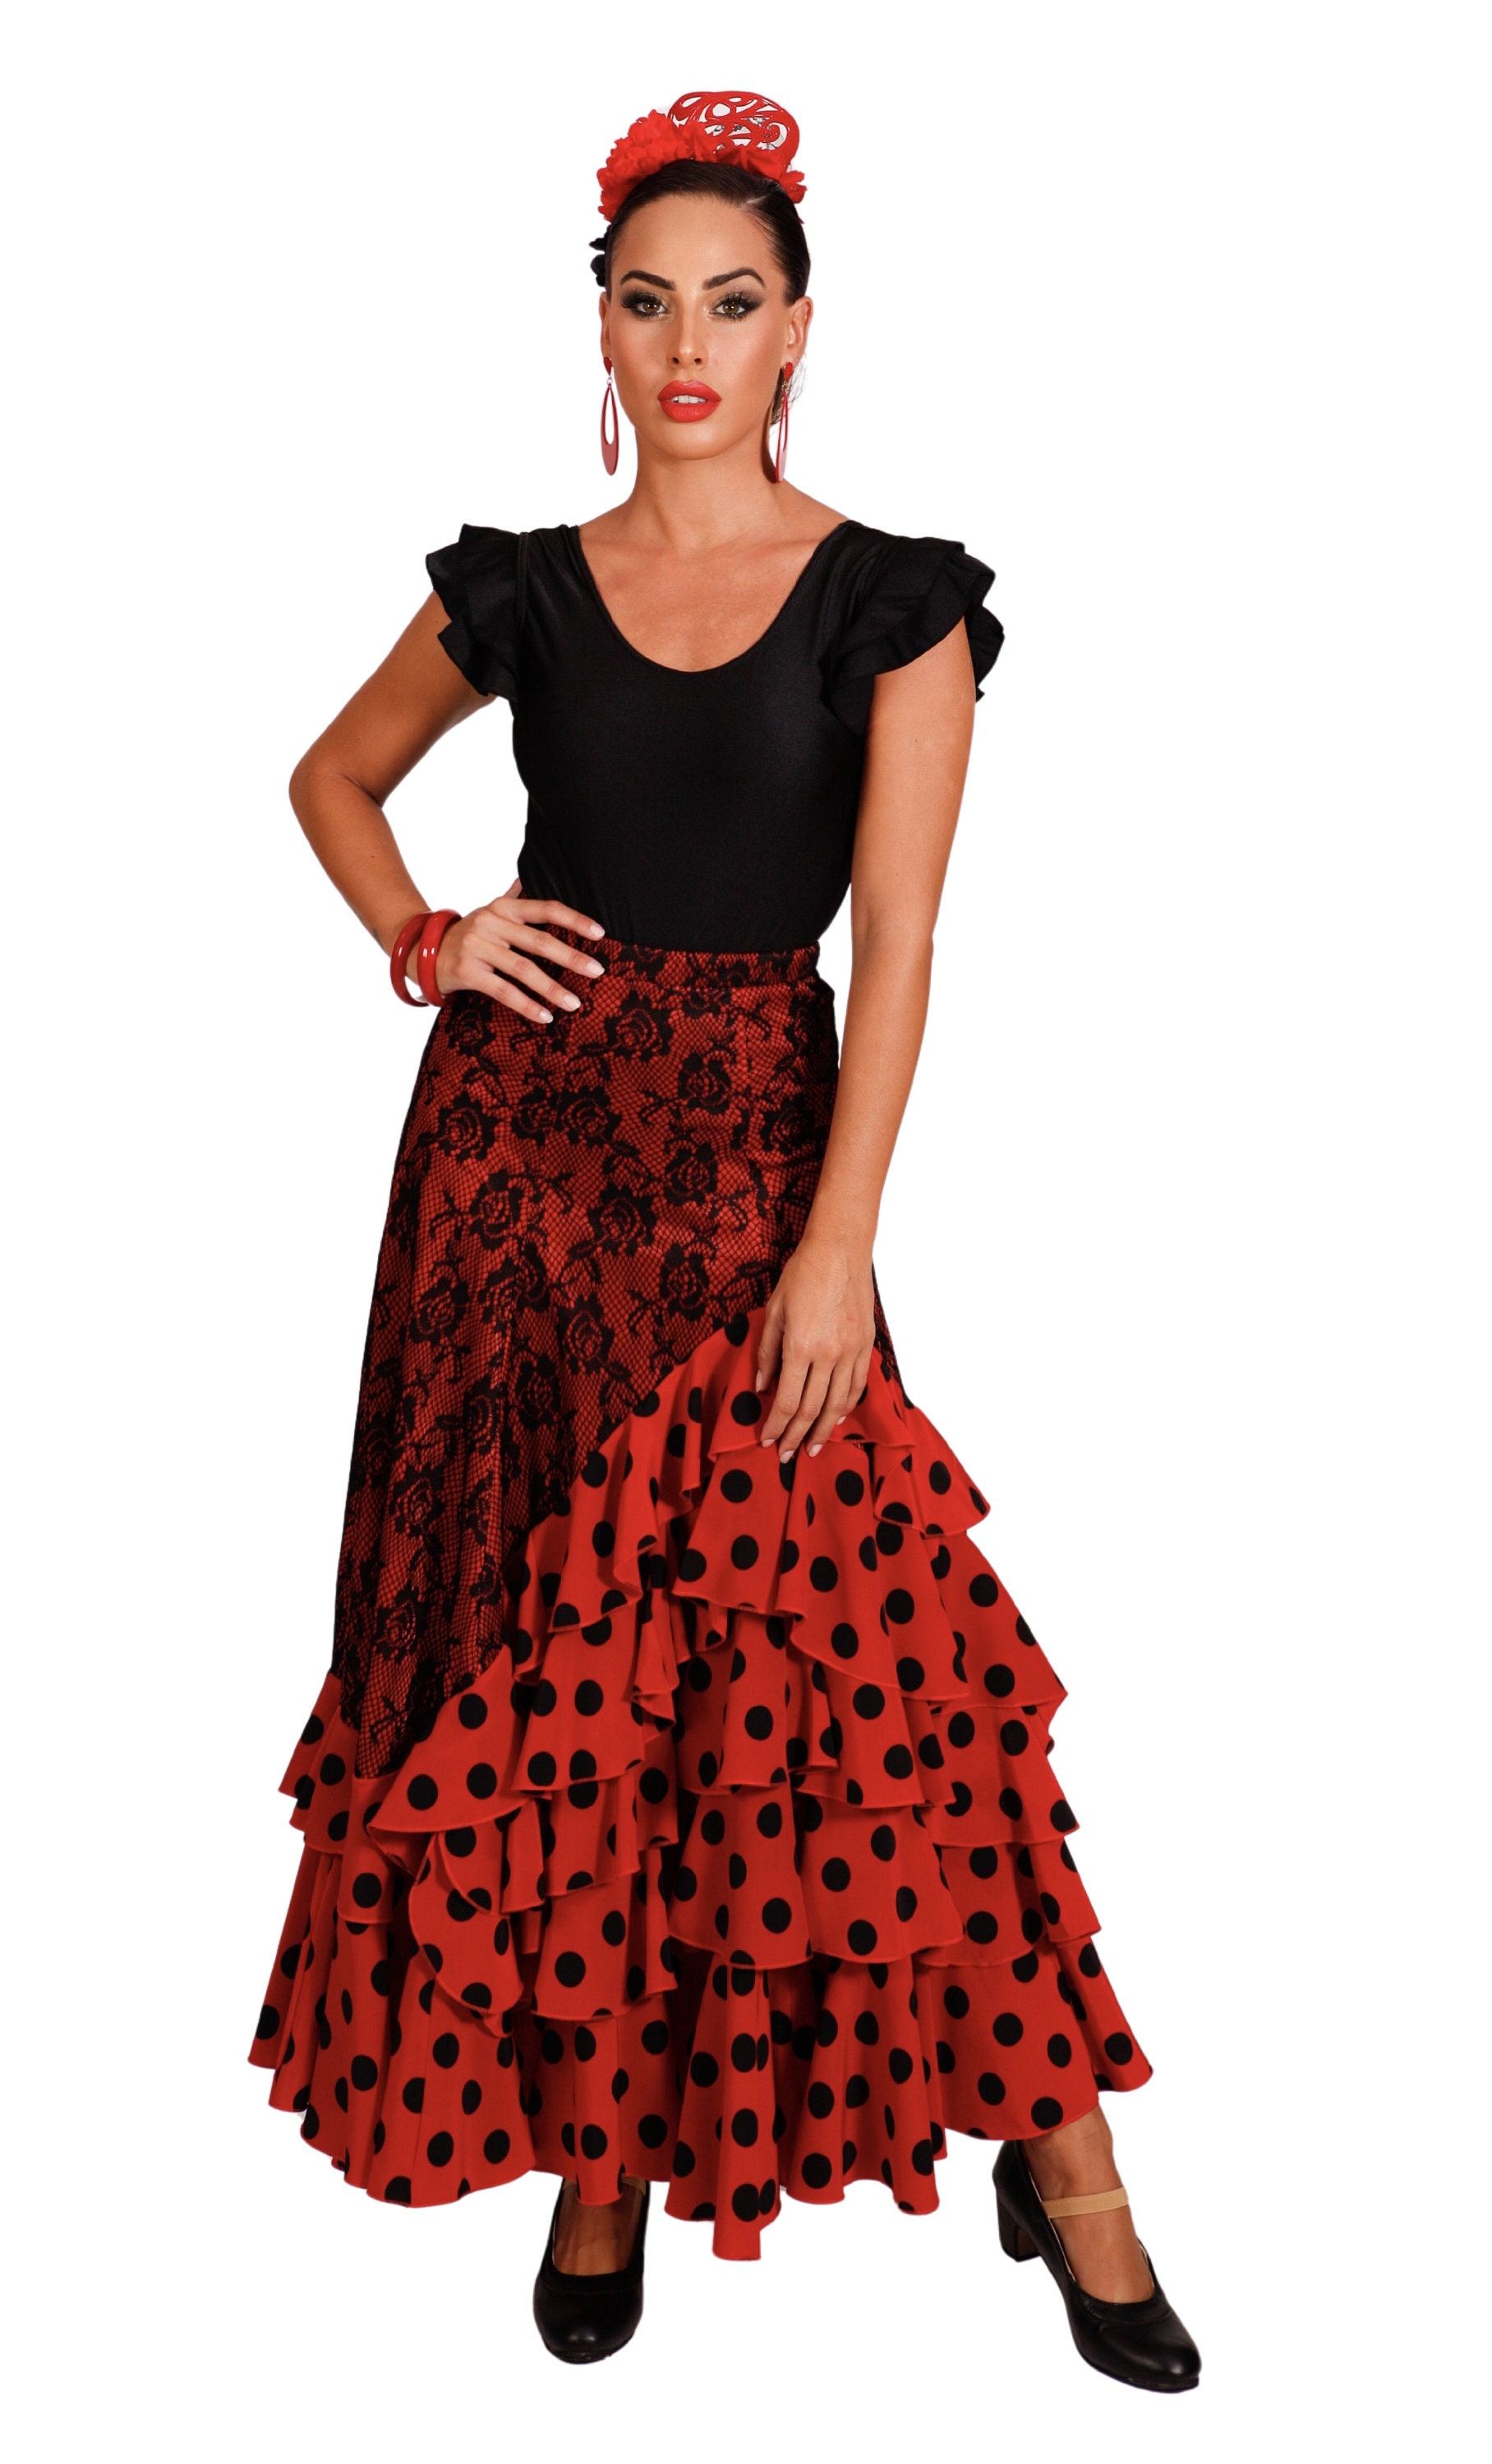 Zapatos niña de baile flamenco o sevillanas  ANUKA - Tienda flamenca  online de vestuario especializada en grupos